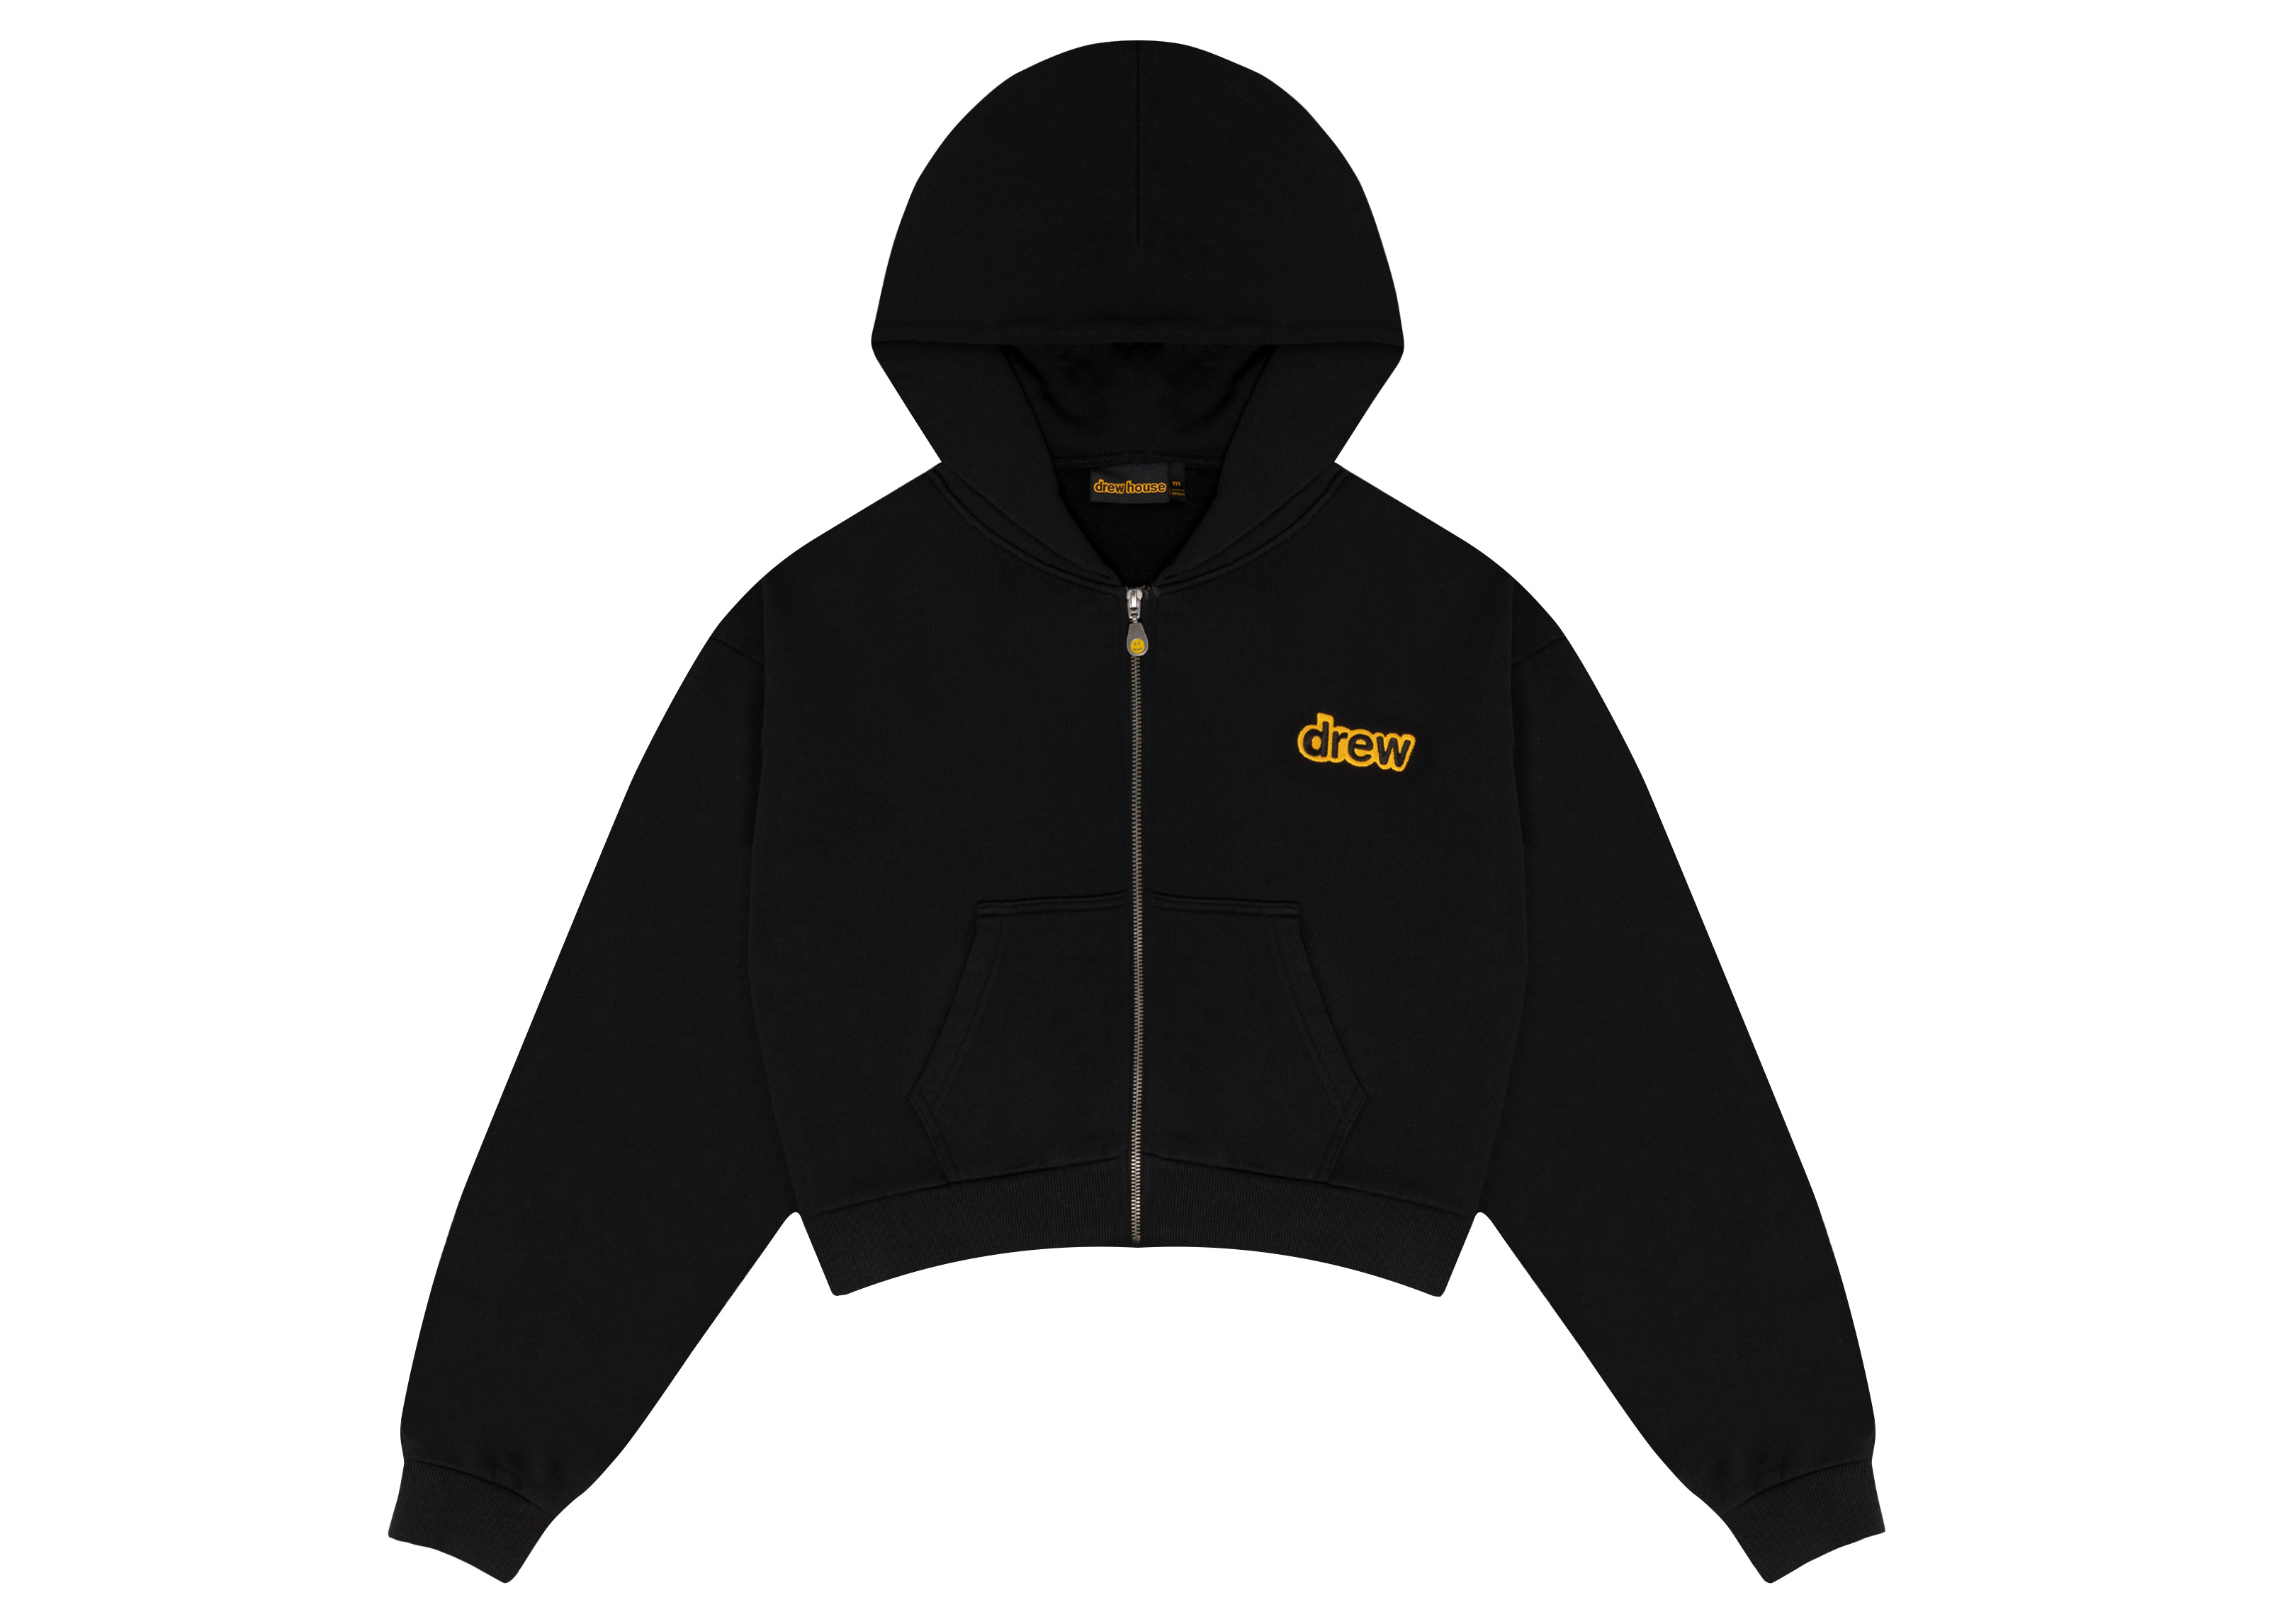 drew house cropped zip up hoodie black